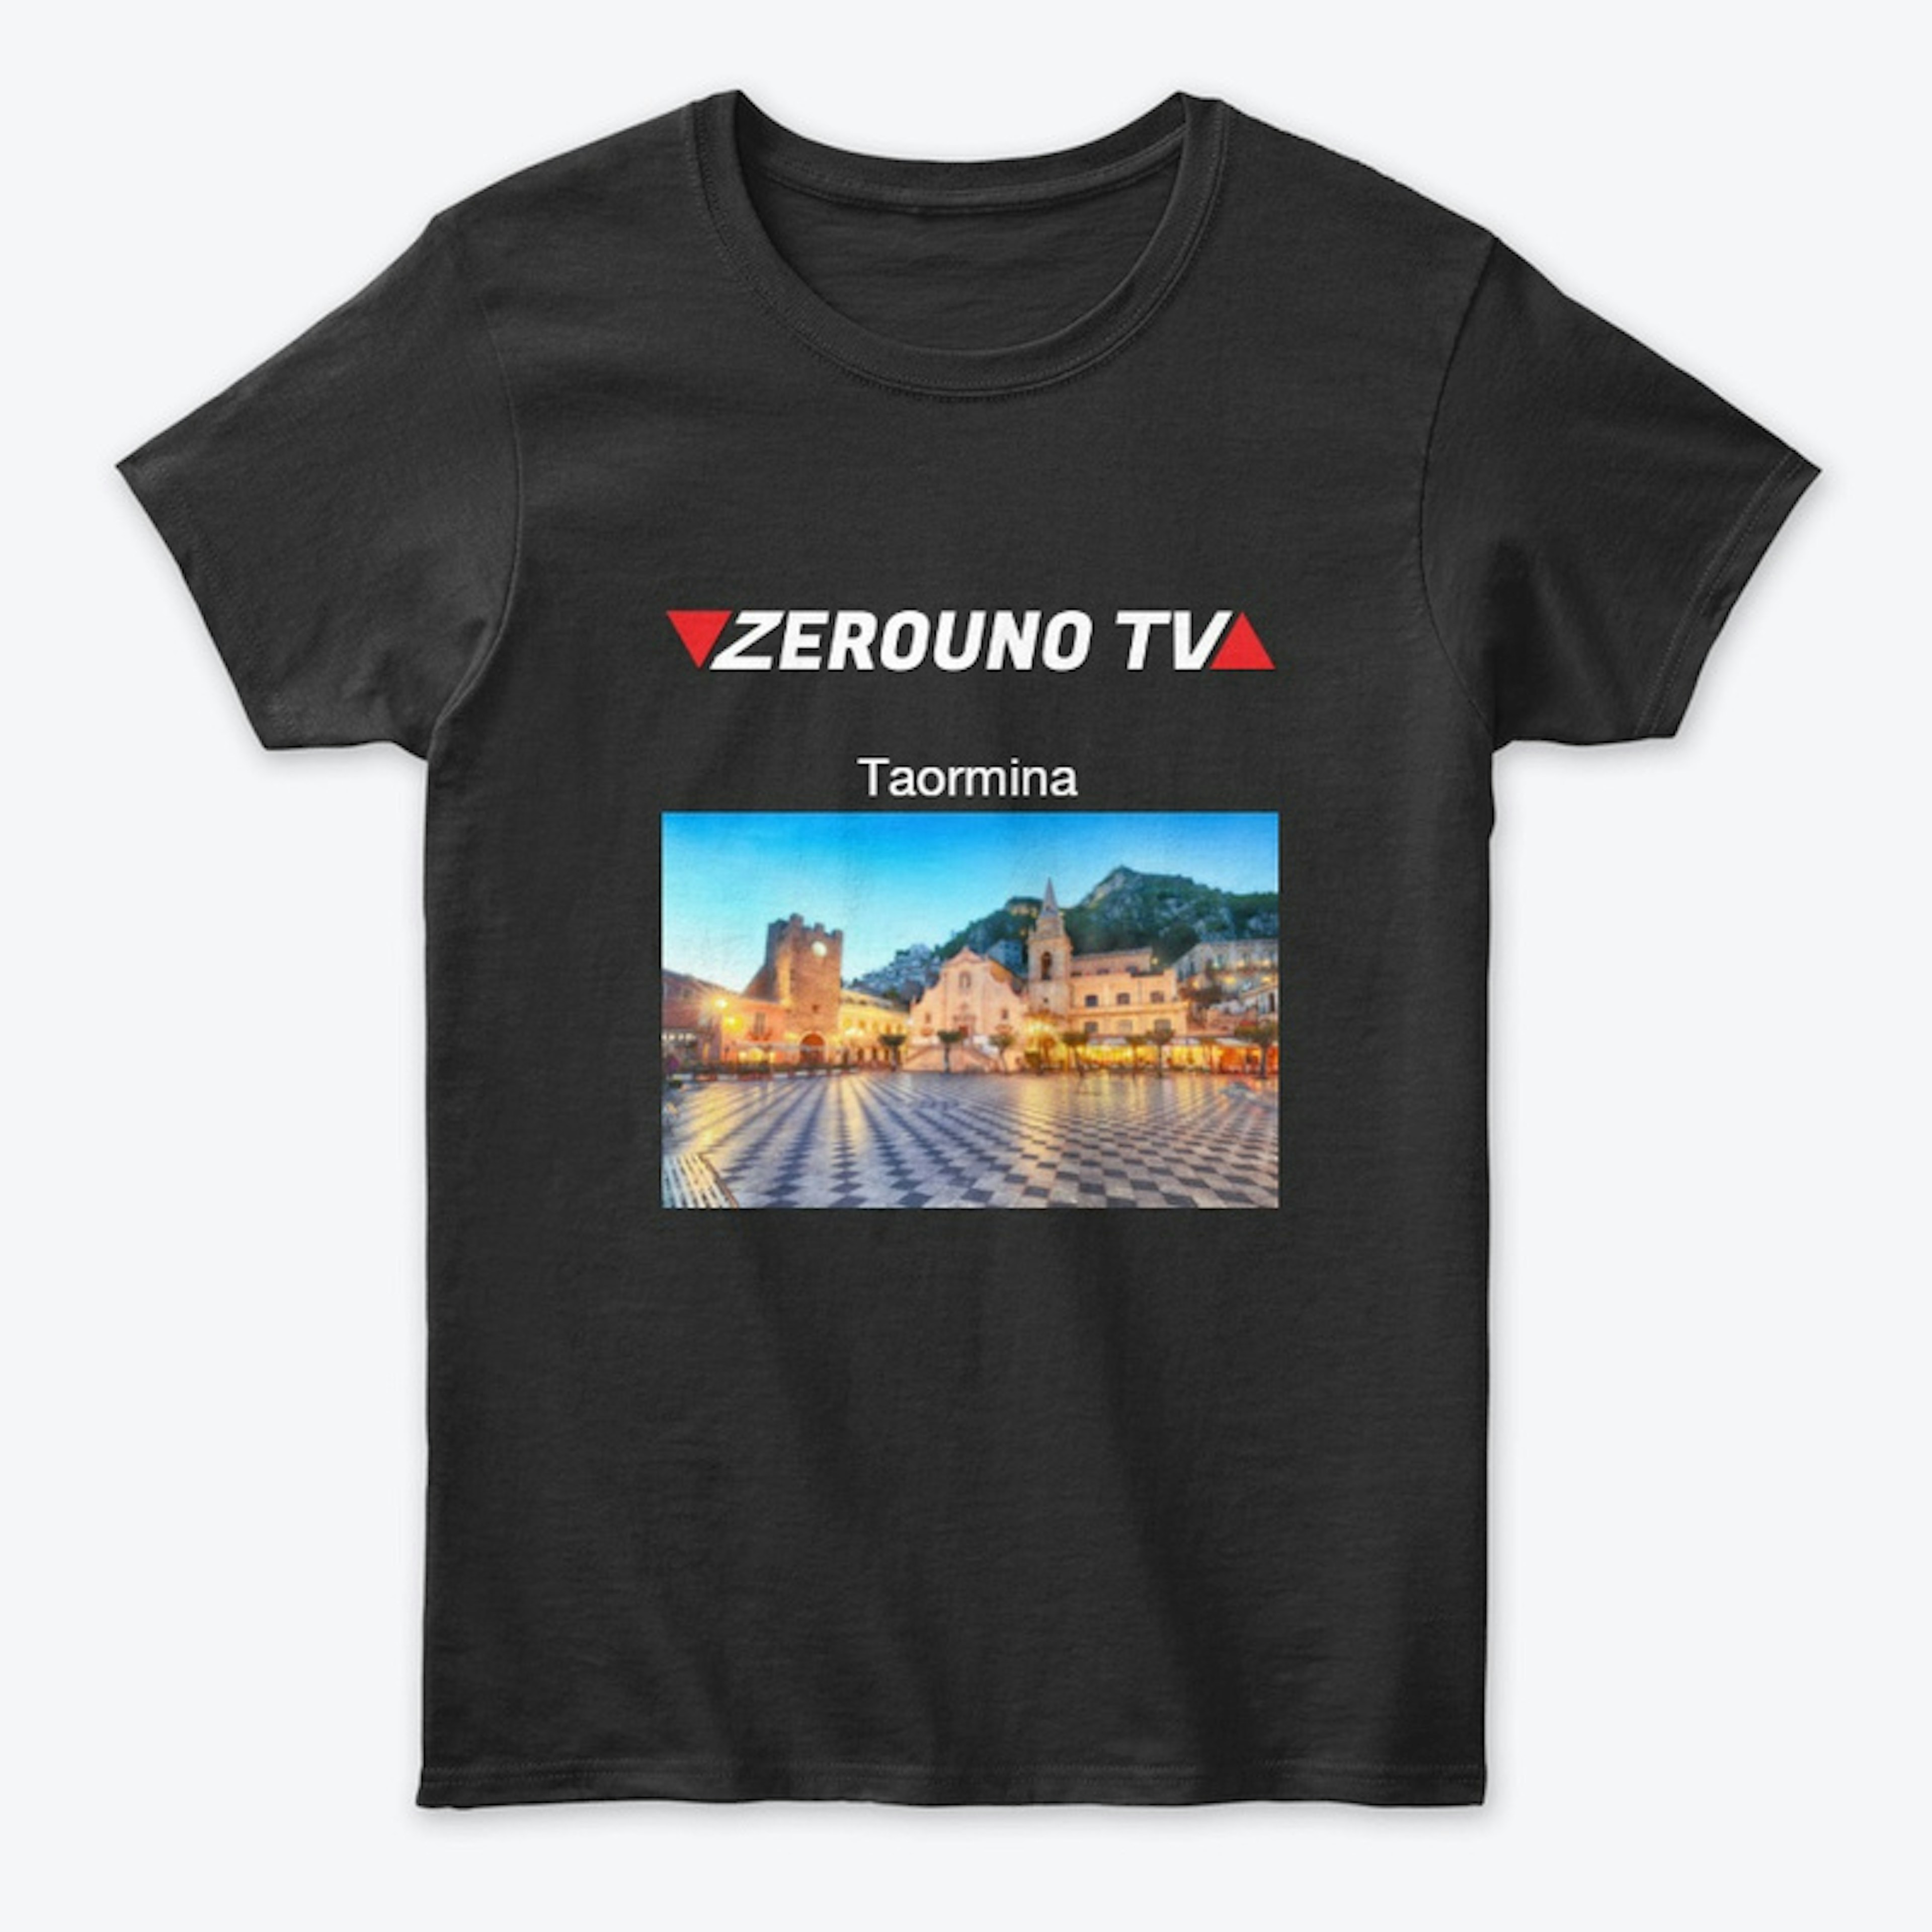 Zerouno TV Taormina